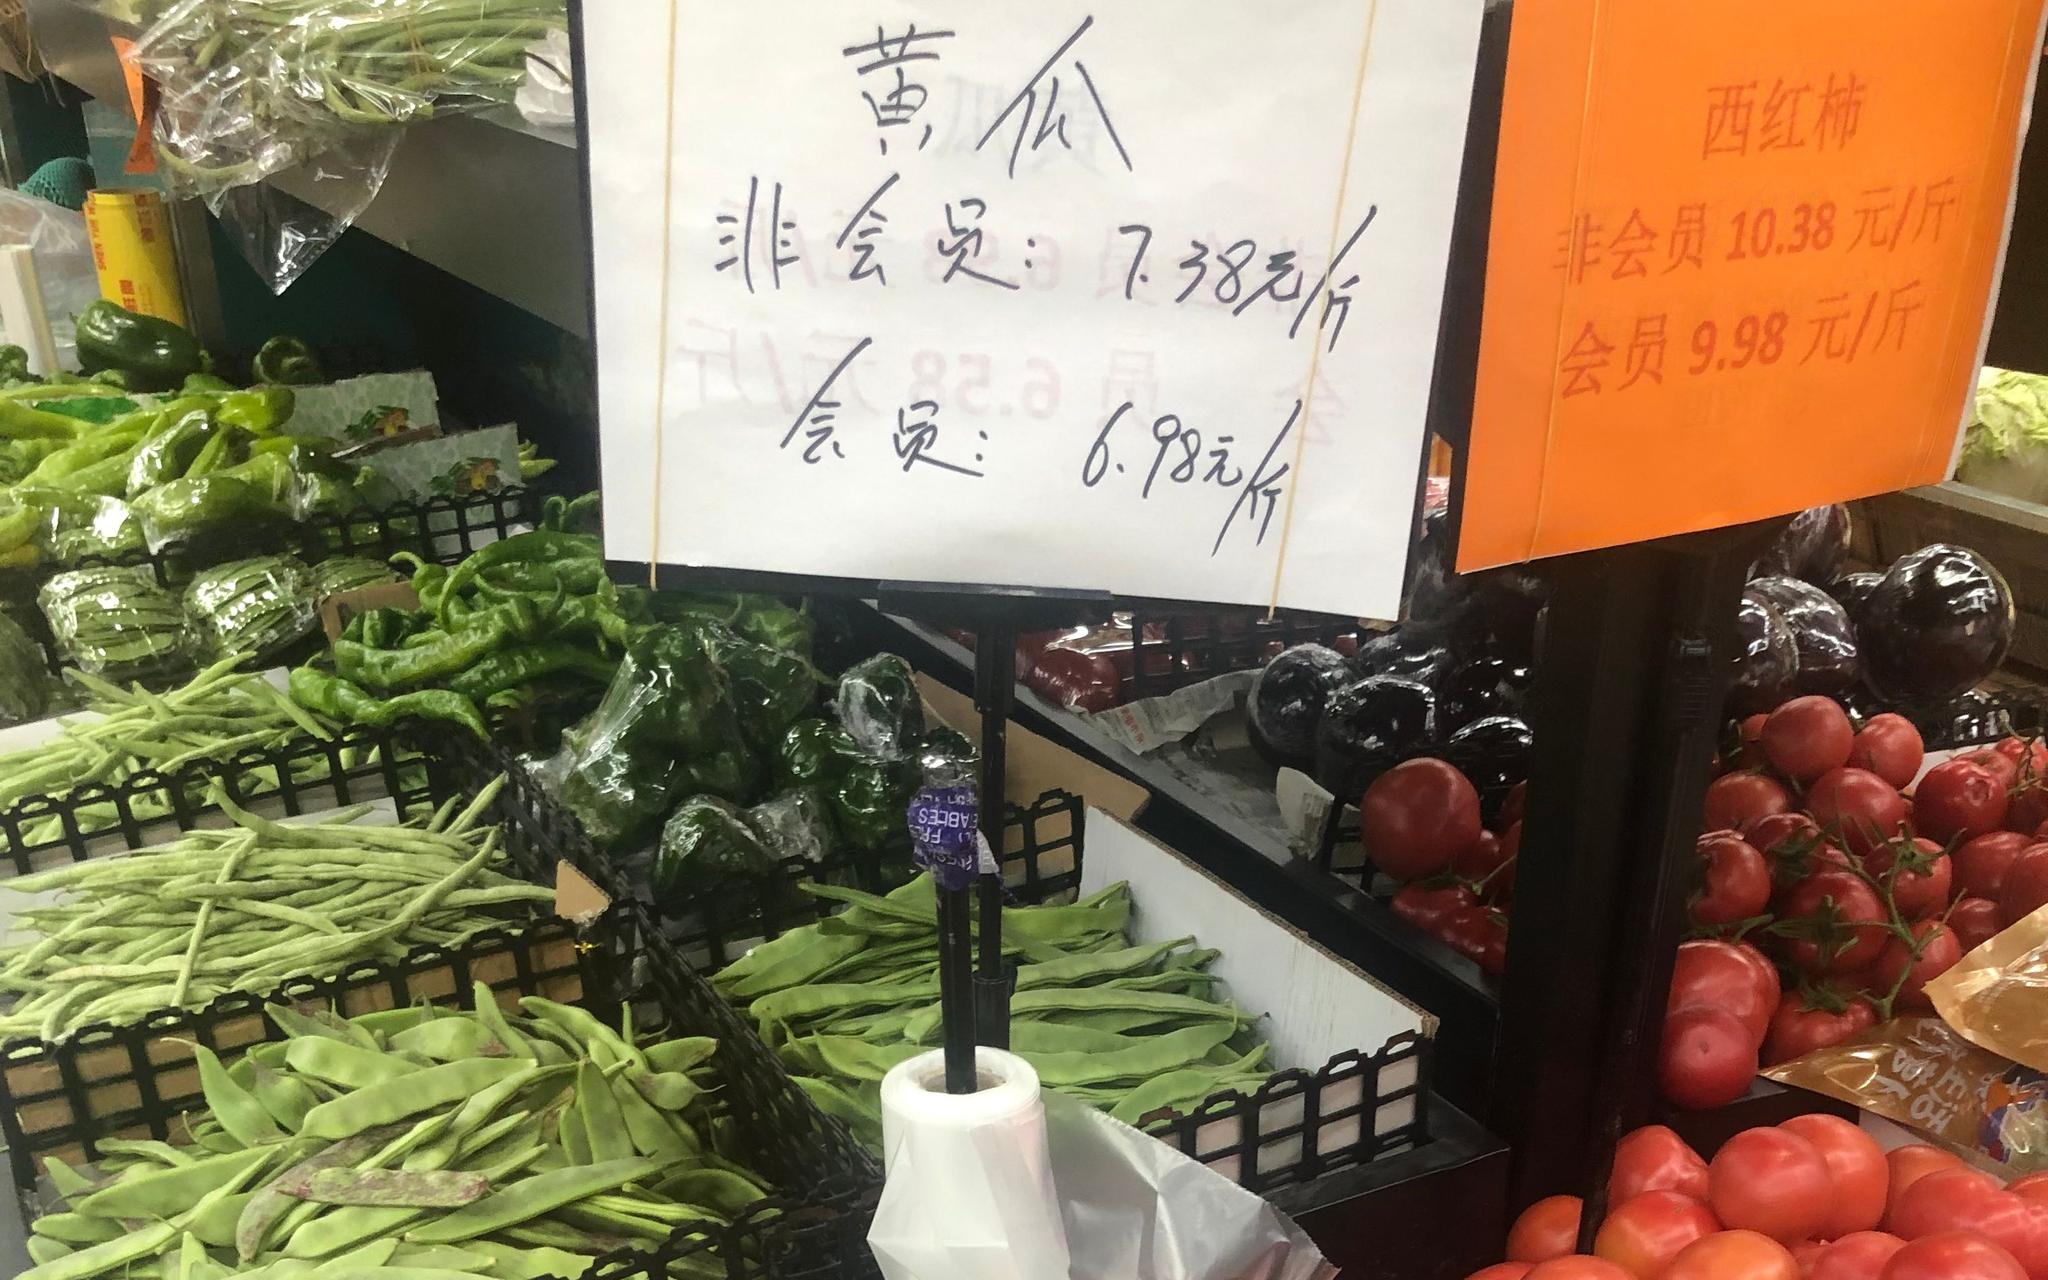 北京丰台一社区超市菜价。新京报记者 田杰雄 摄